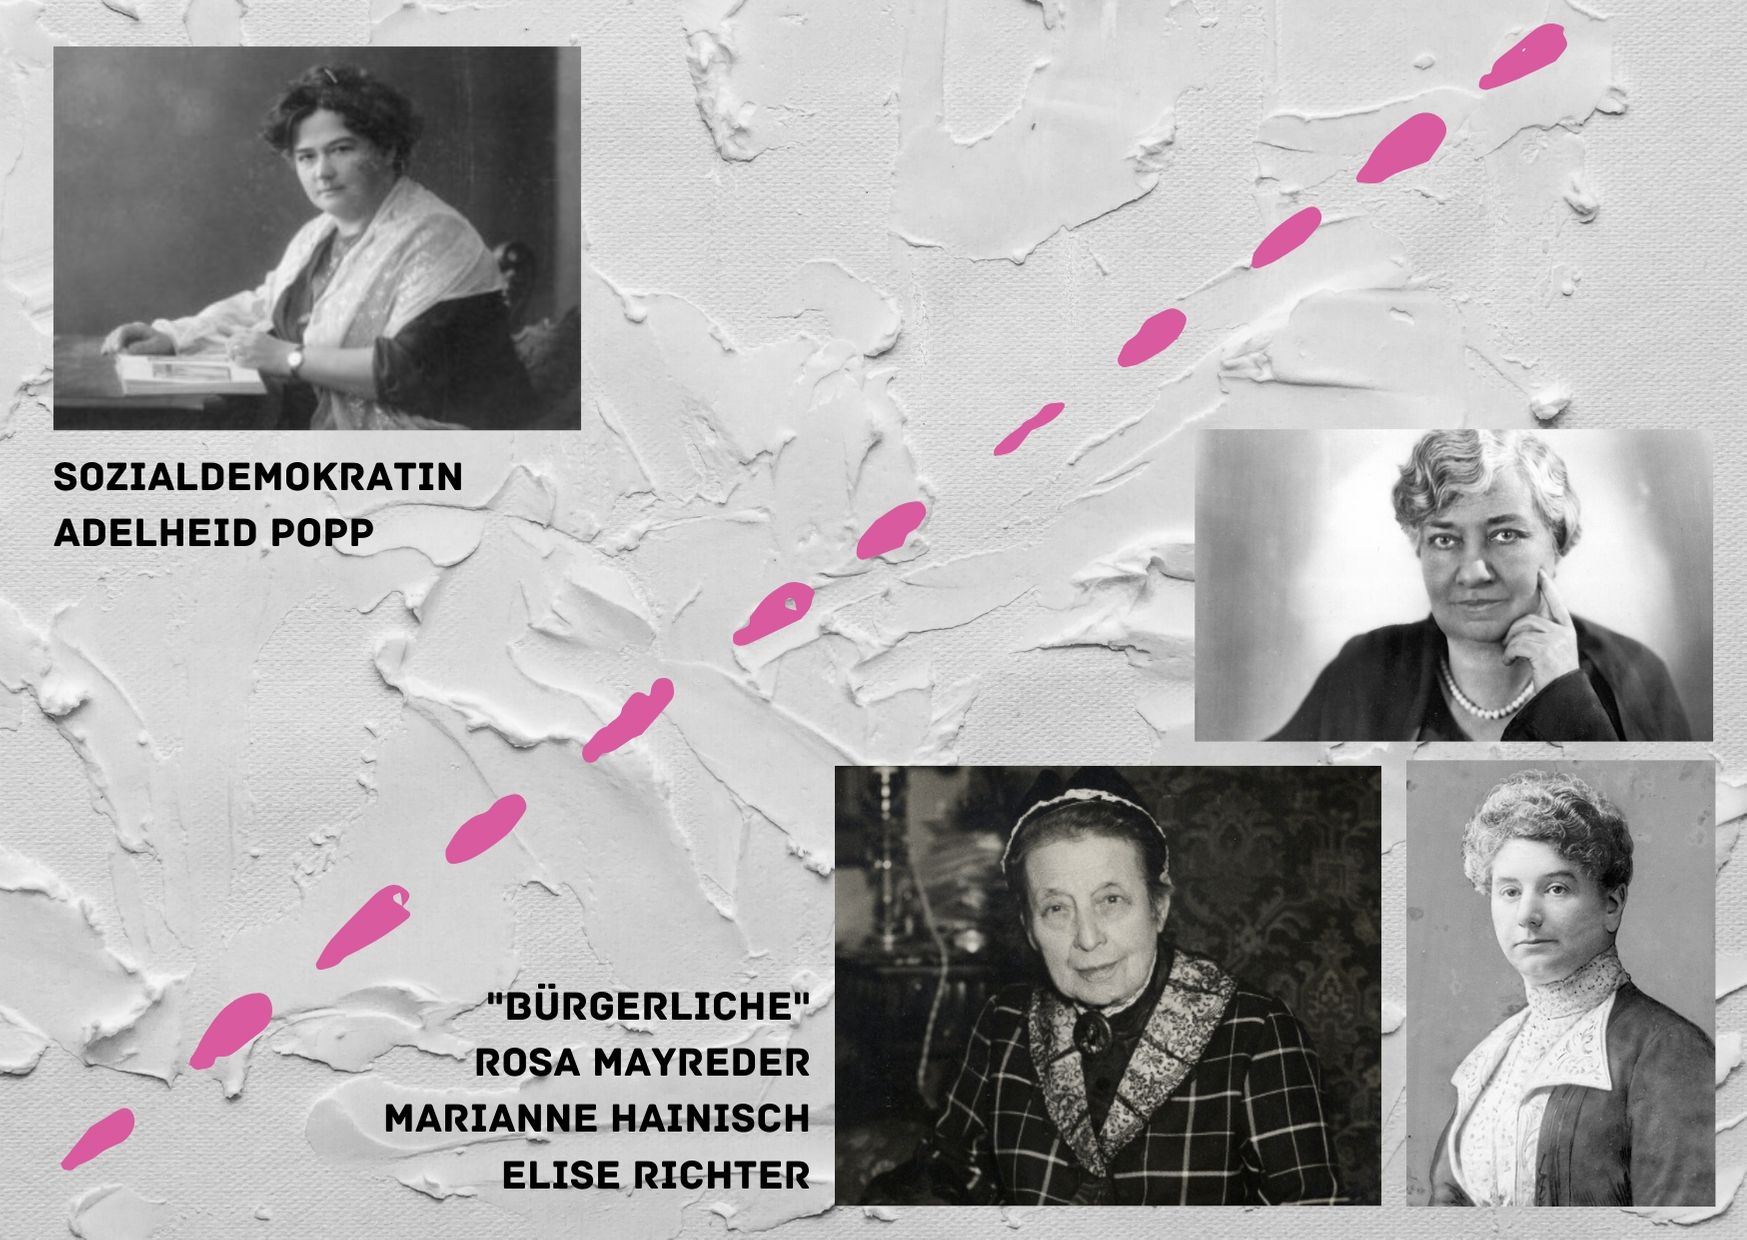 Adelheid Popp, Elise Richter, Rosa Mayreder, Marianne Hainisch, politische Verortung